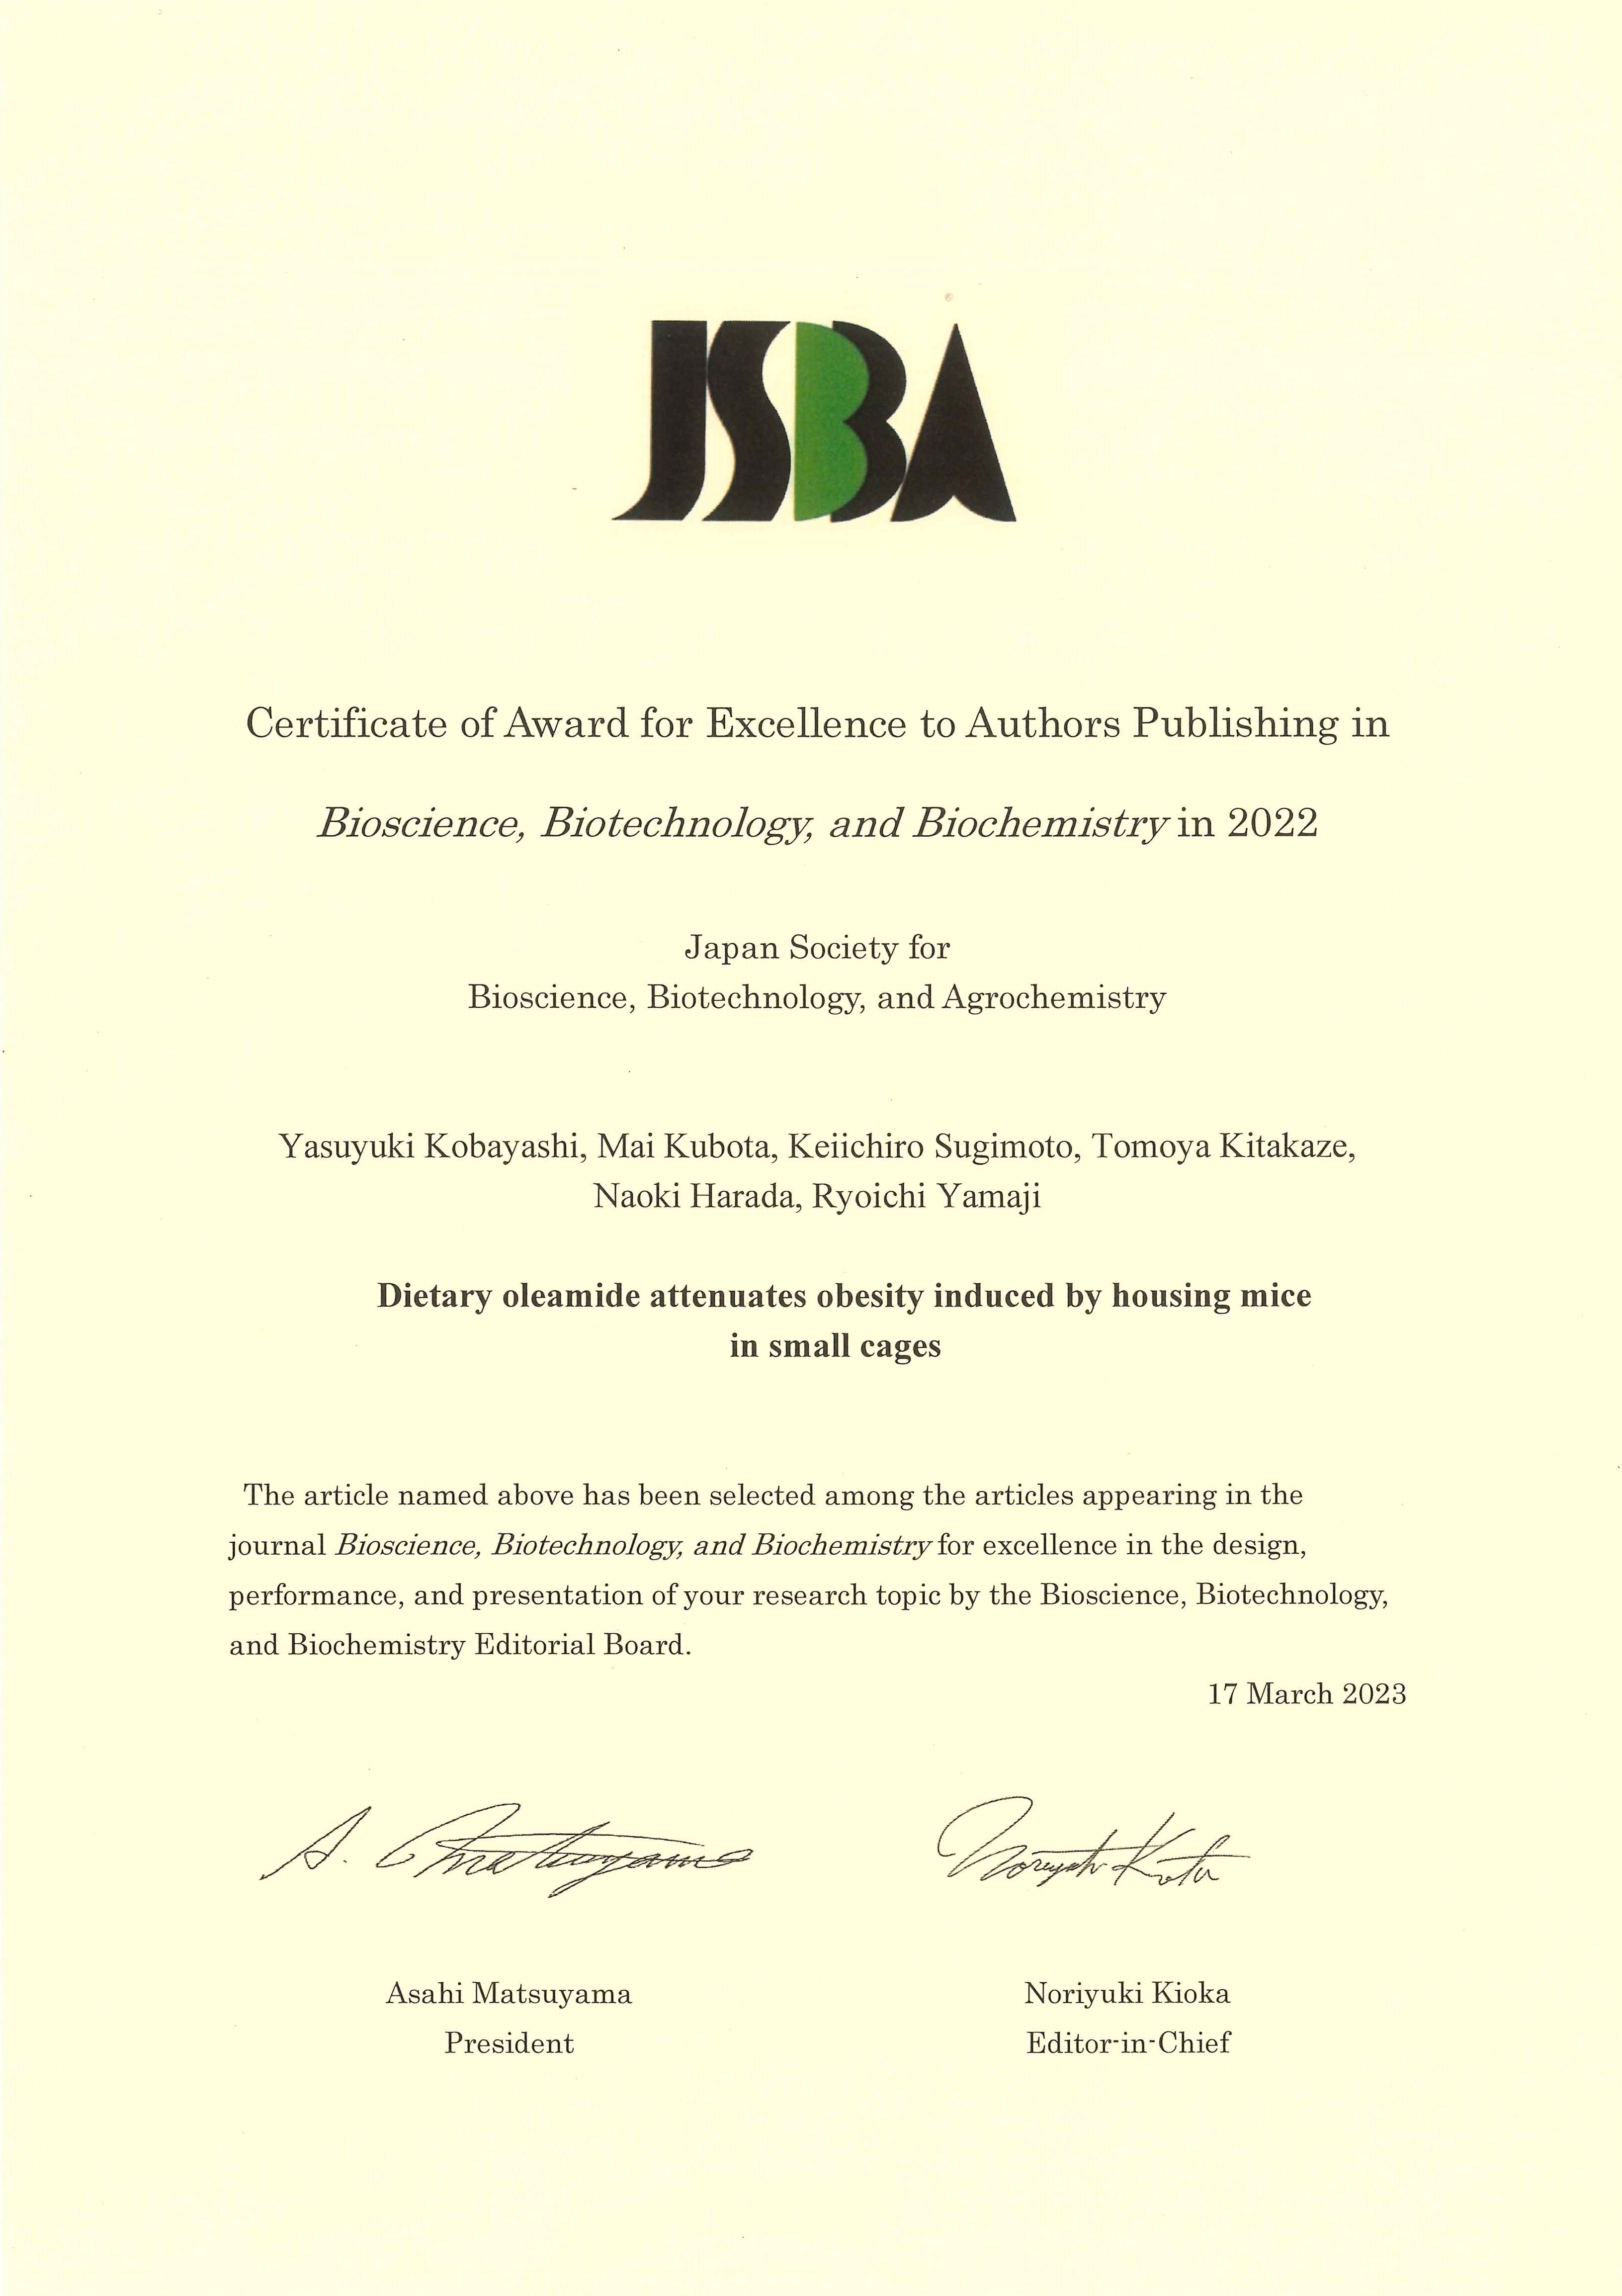 オレアミドの運動不足誘導肥満抑制作用に関する論文が「BBB論文賞」を受賞